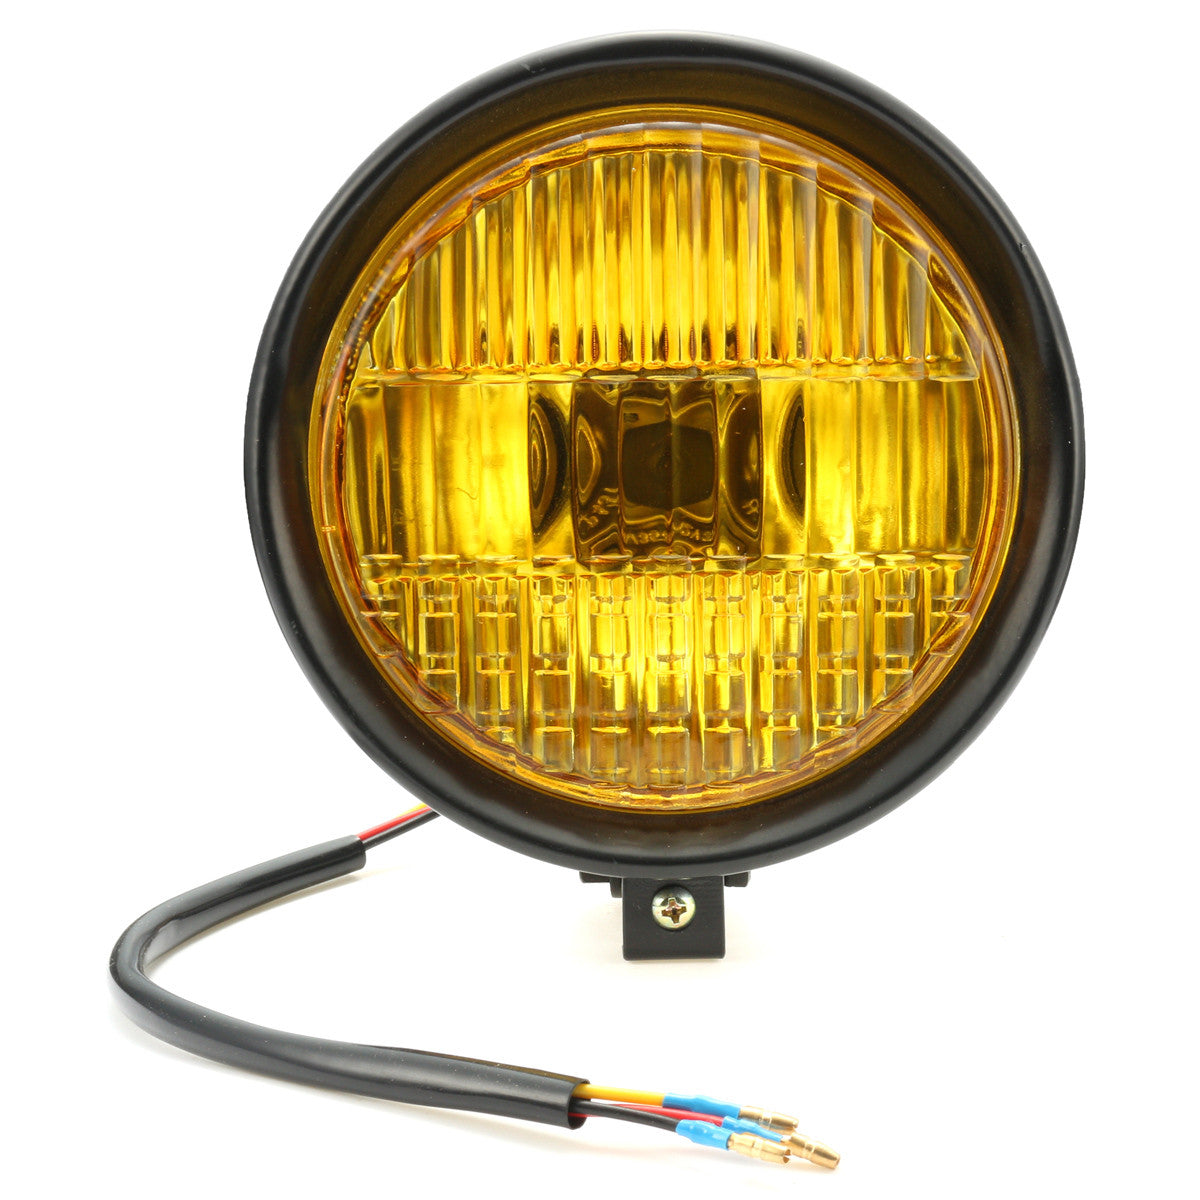 Goldenrod 5.75" Motorcycle Headlight Light Retro Metal Yellow Len For Harley Bobber Chopper